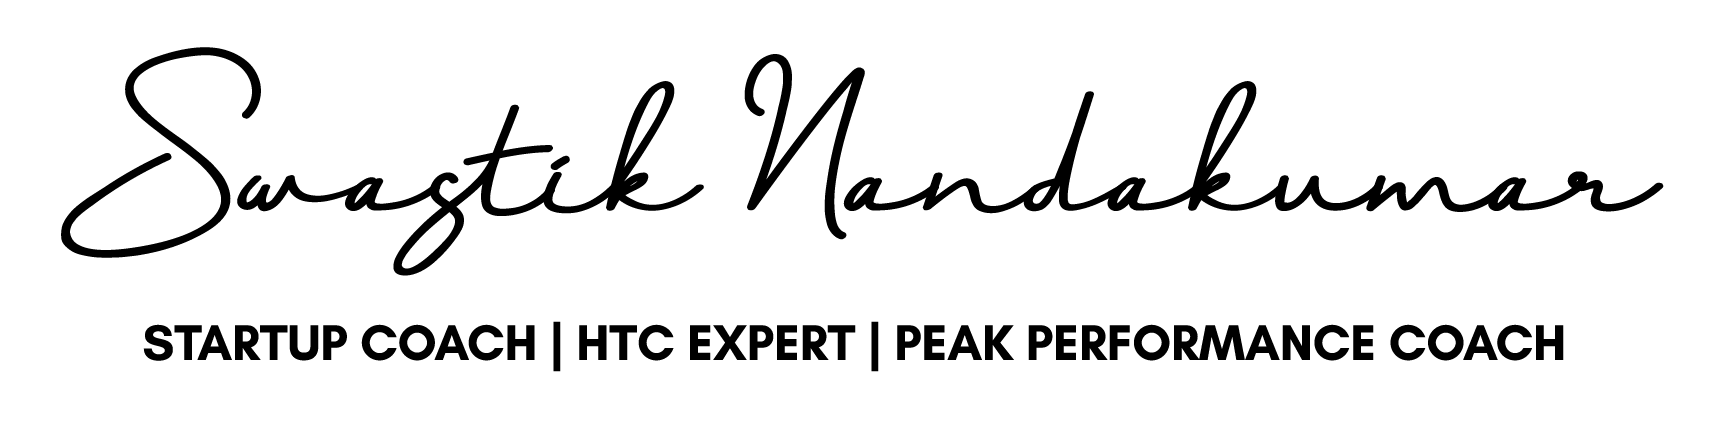 Swastik Logo Black-redefined